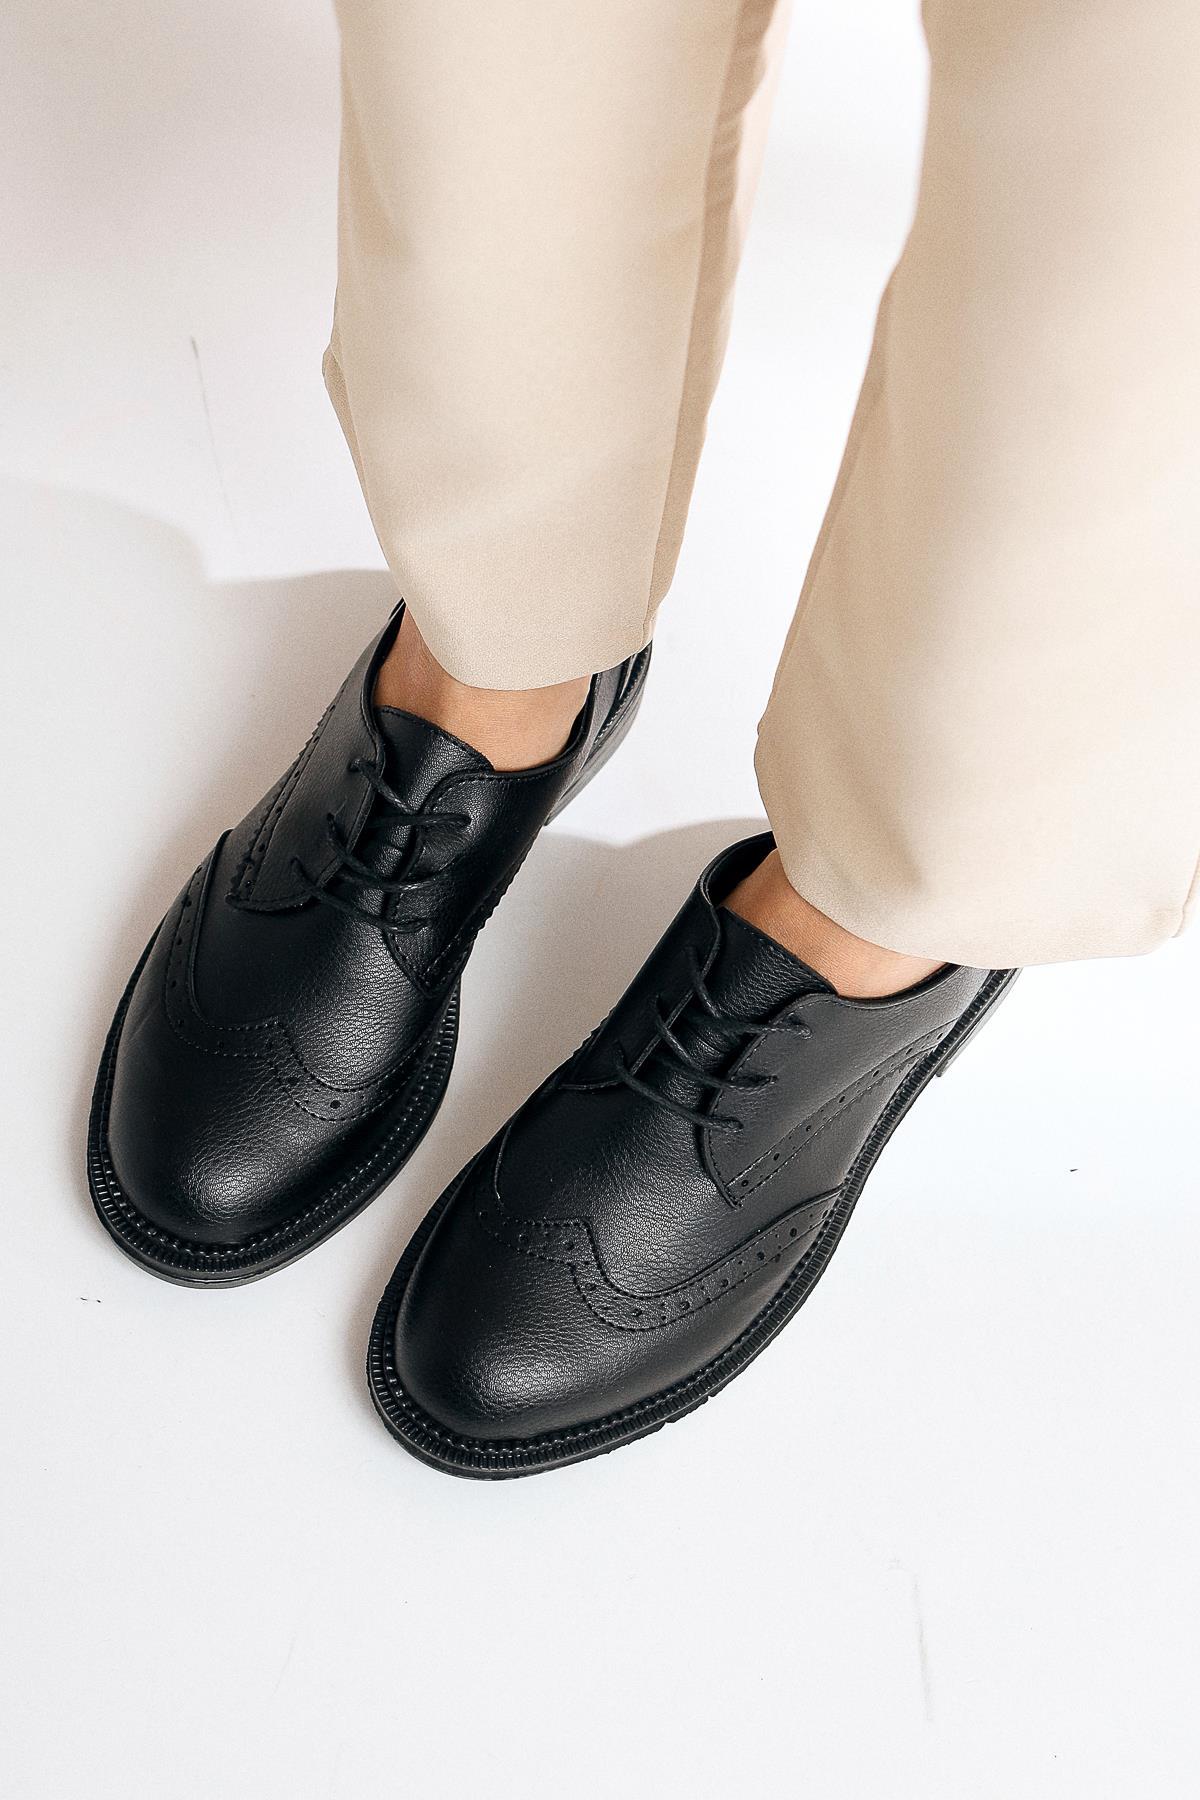 Mitzie Siyah Bağcıklı Oxford Ayakkabı | Limoya.com ile Modayı Keşfet!